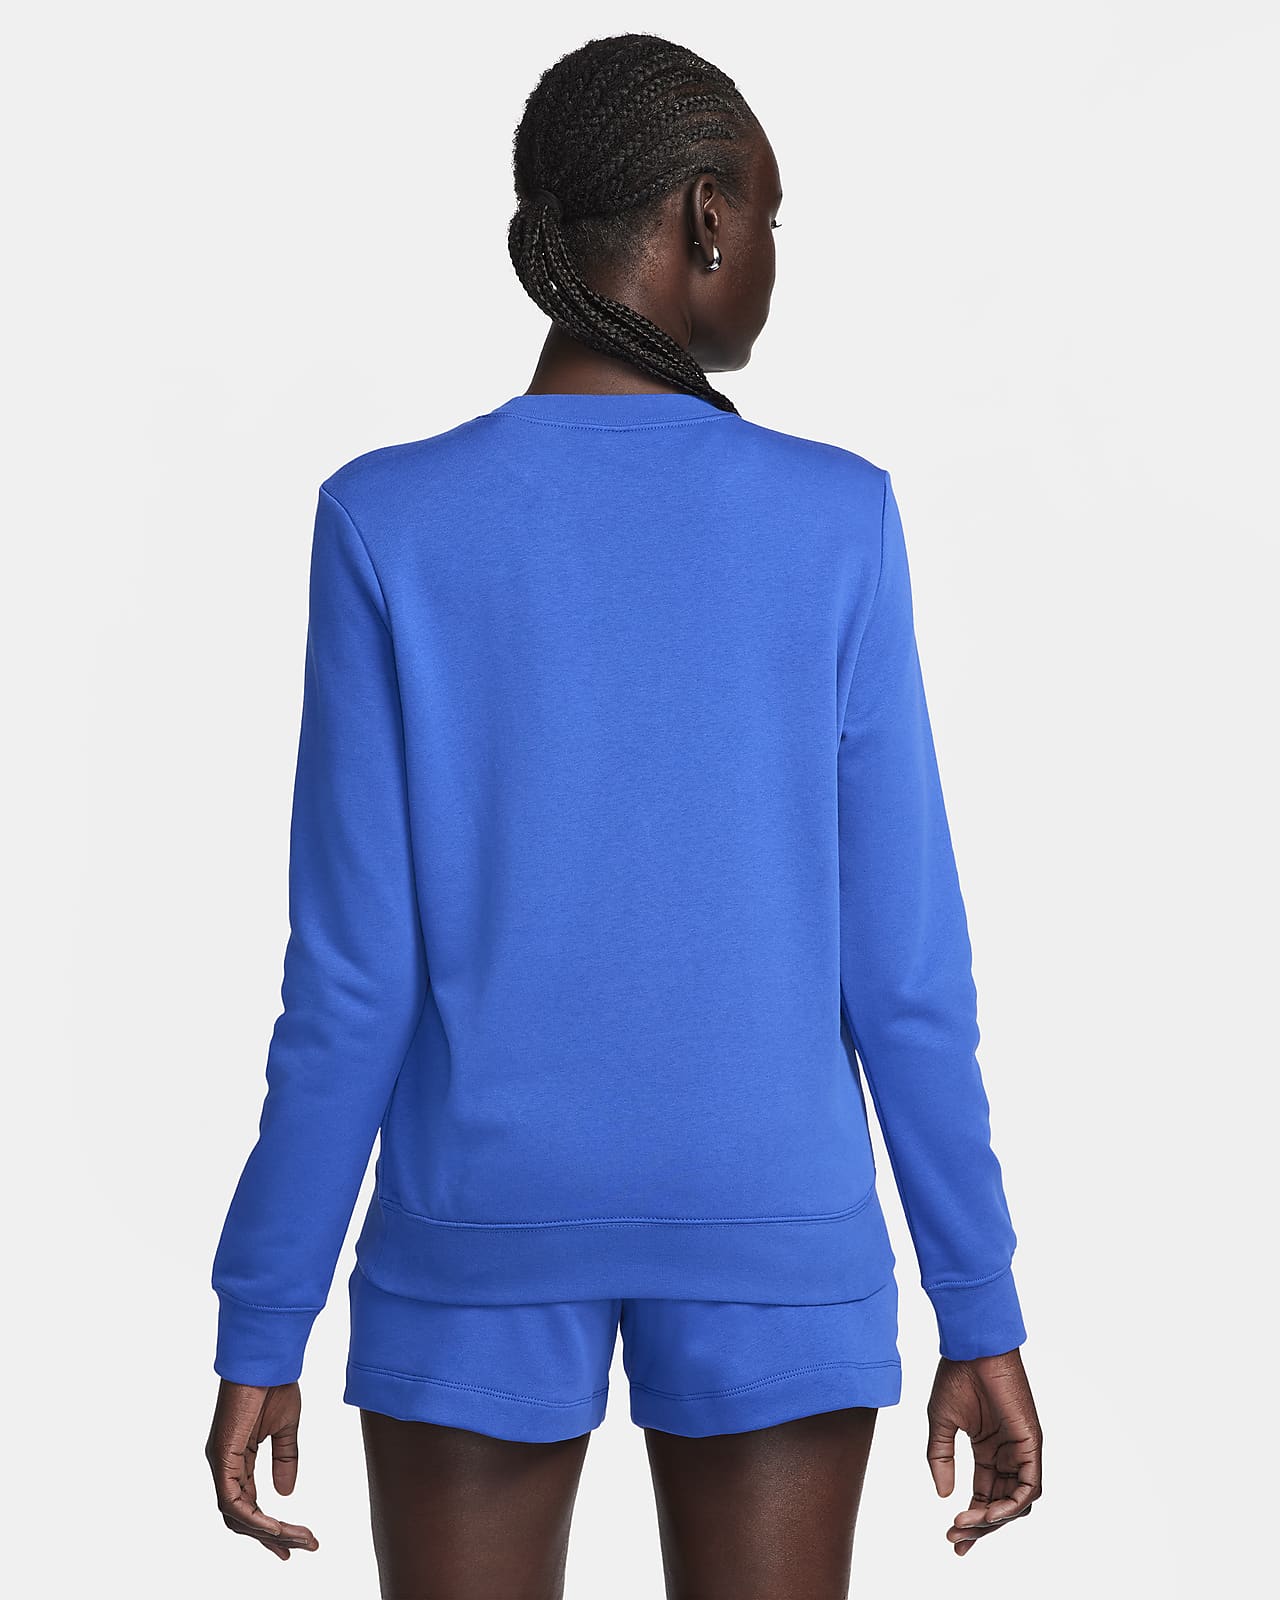 Nike Sportswear Women's Oversized Fleece Crew-Neck Sweatshirt. Nike CA